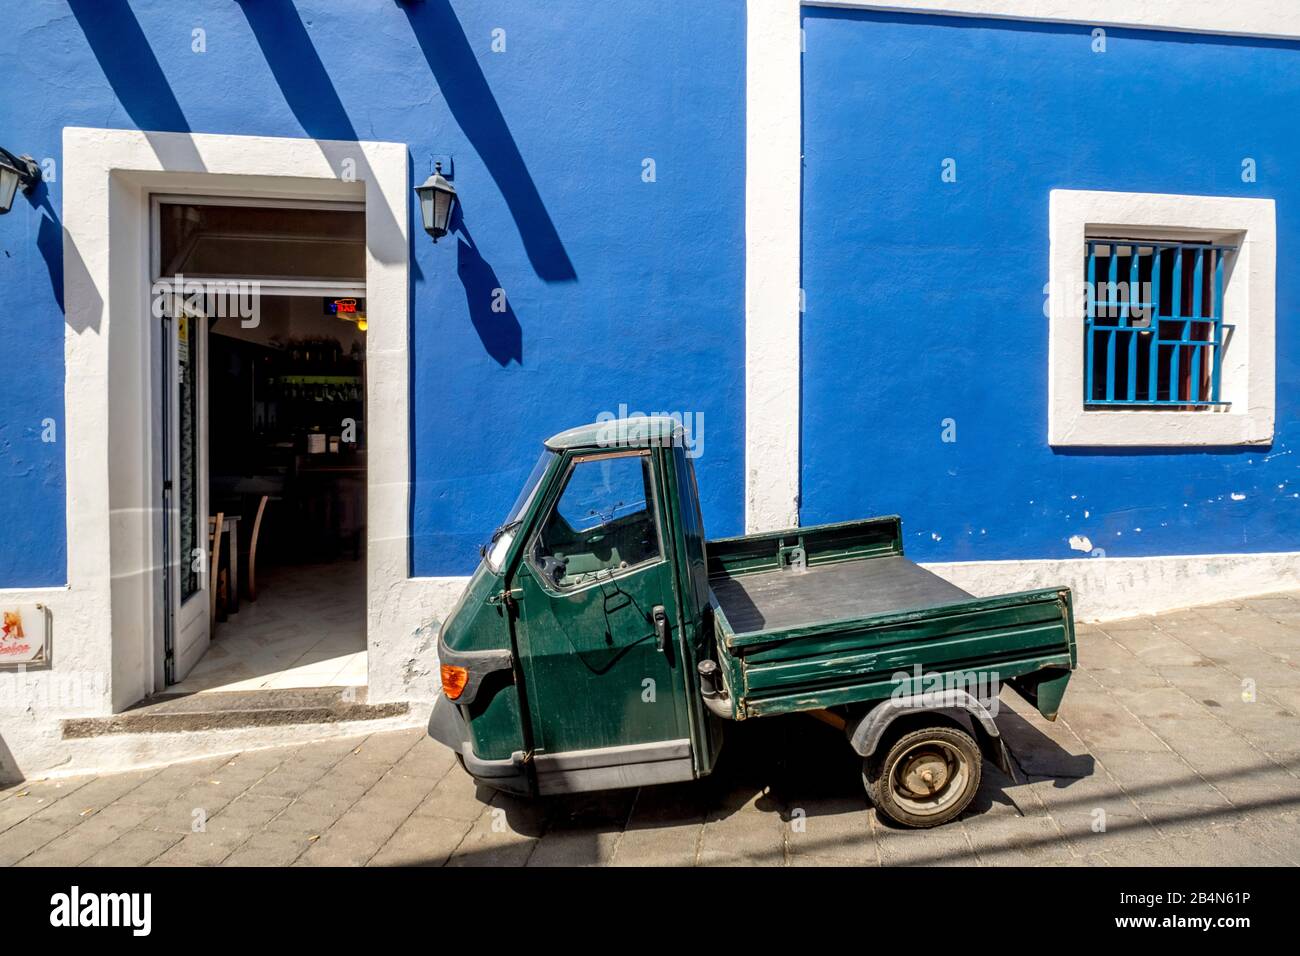 Piaggio Ape devant un café avec mur bleu de maison, Stromboli, Iles Eoliennes, Iles Eoliennes, Mer Tyrrhénienne, Italie du Sud, Europe, Sicile, Italie Banque D'Images